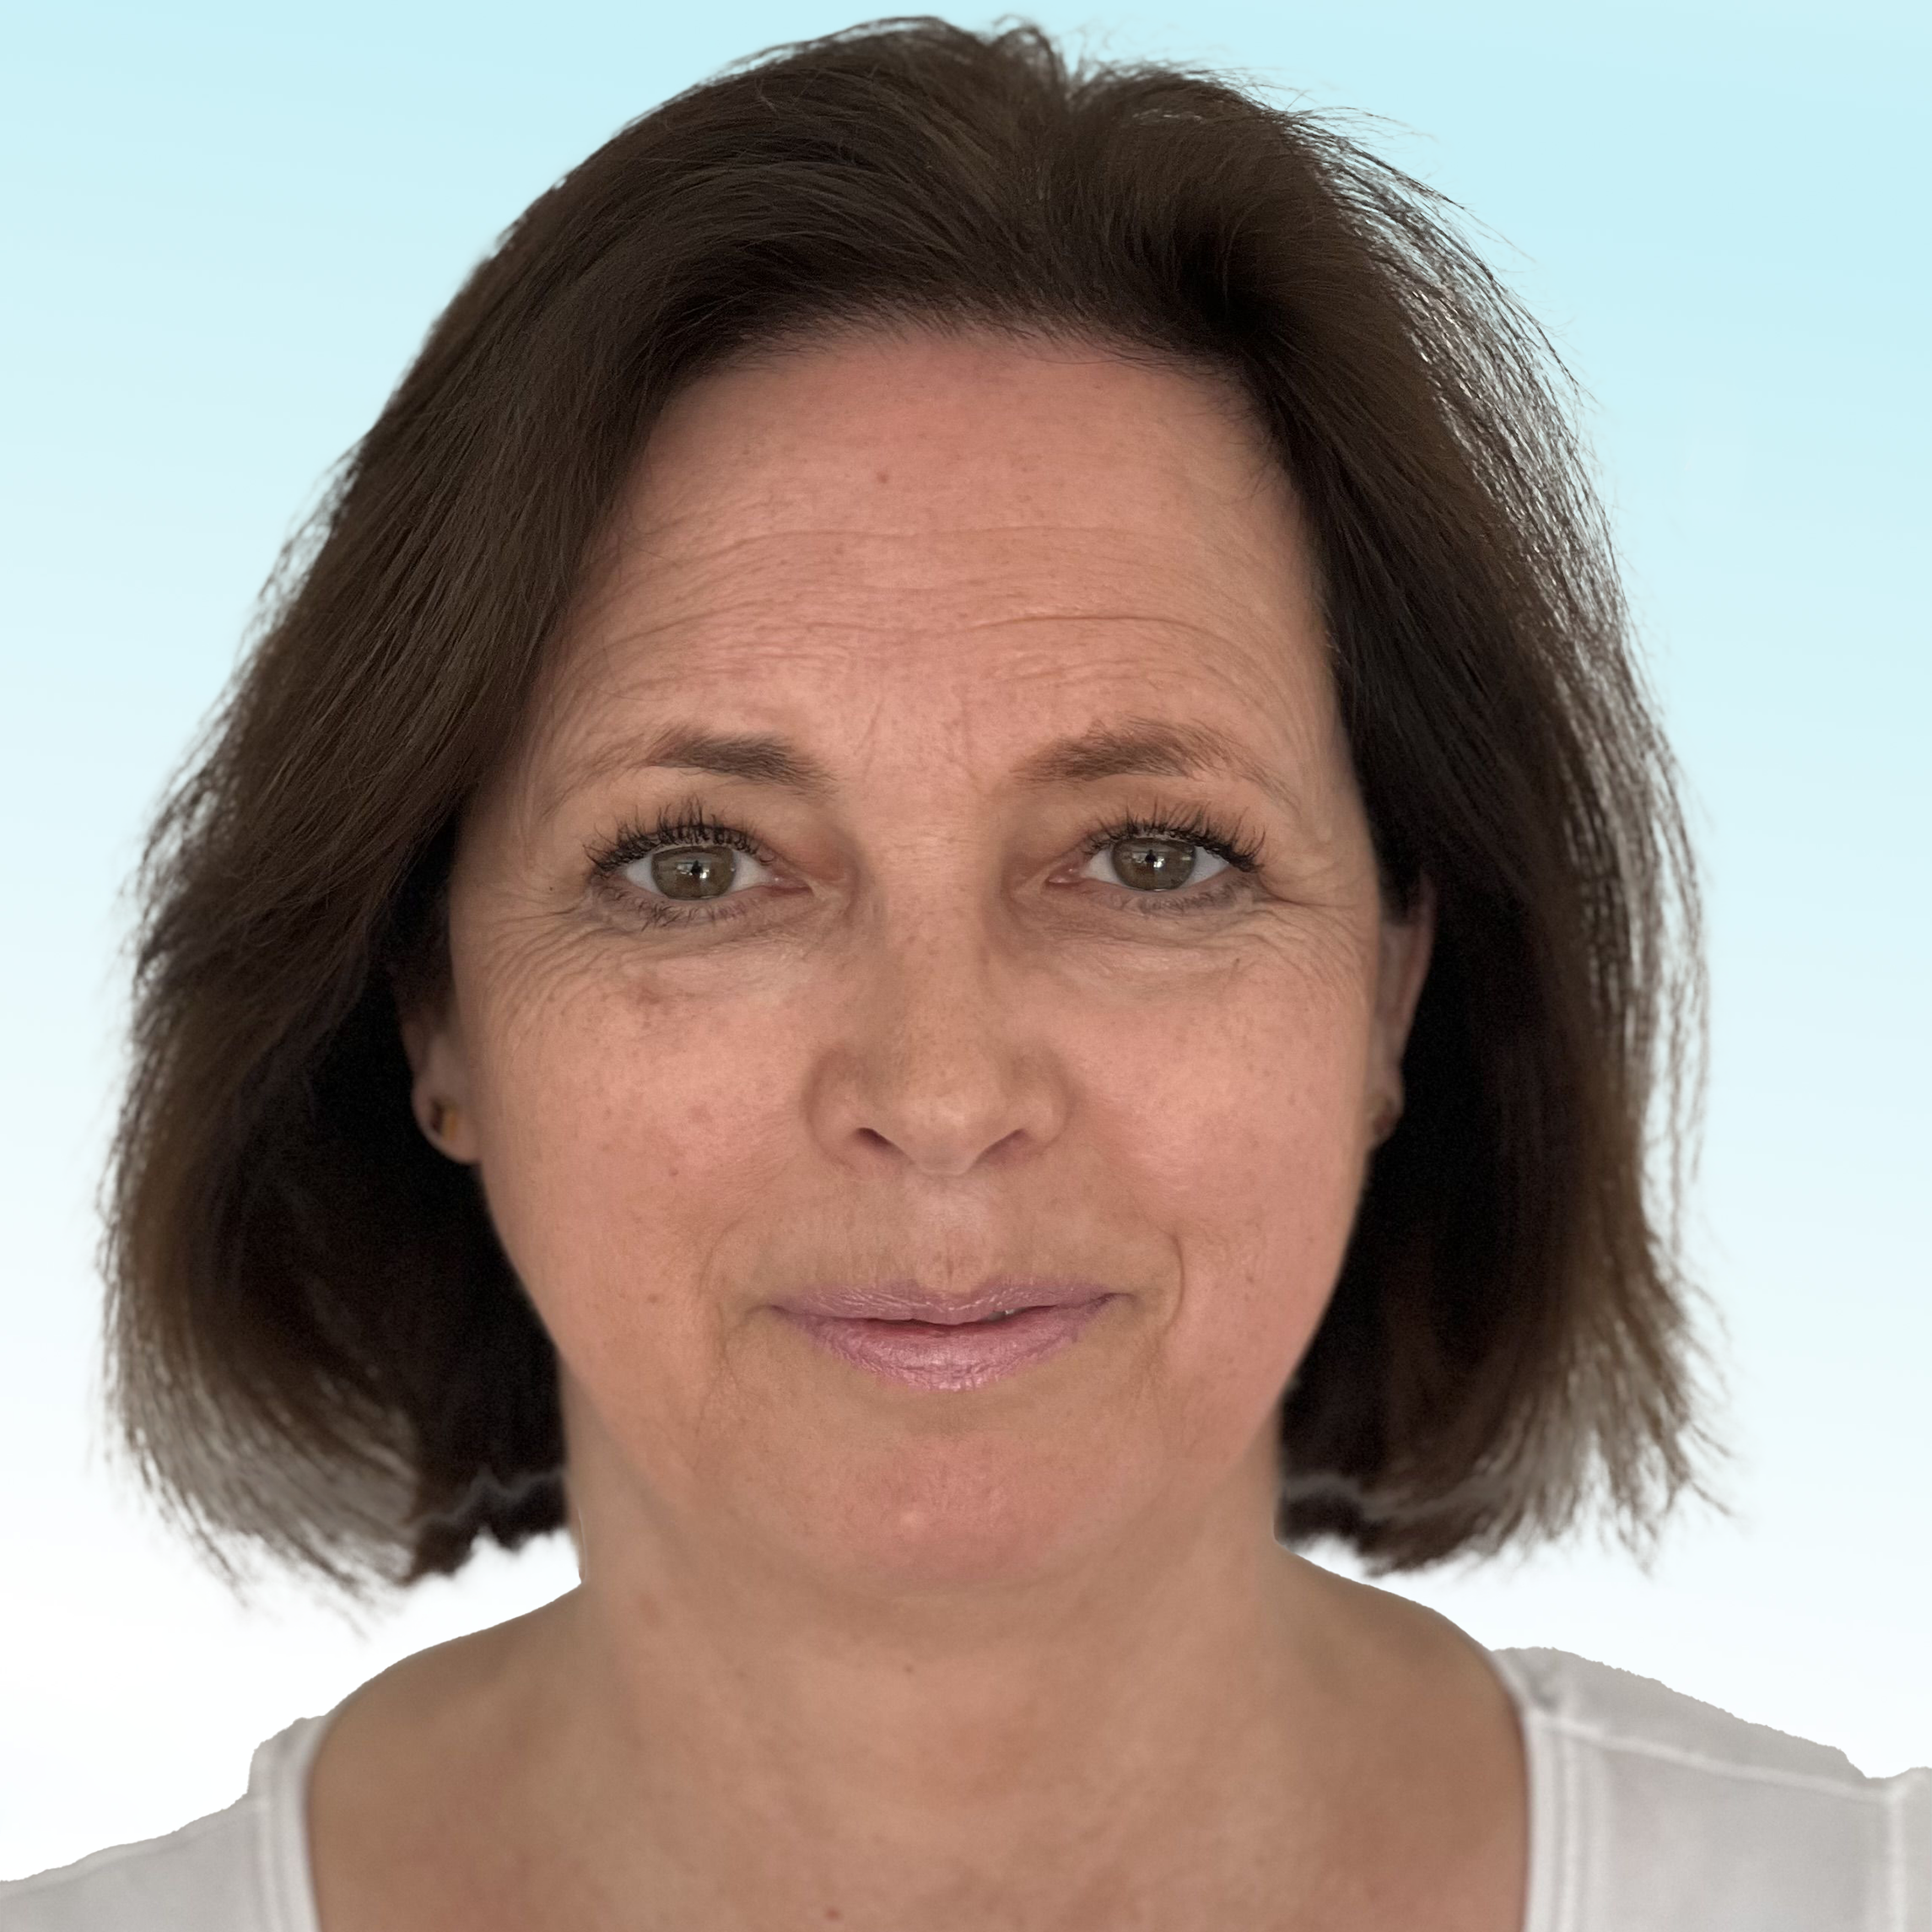 Dermatologo, Dr. med. Anne-Katharina Sonntag